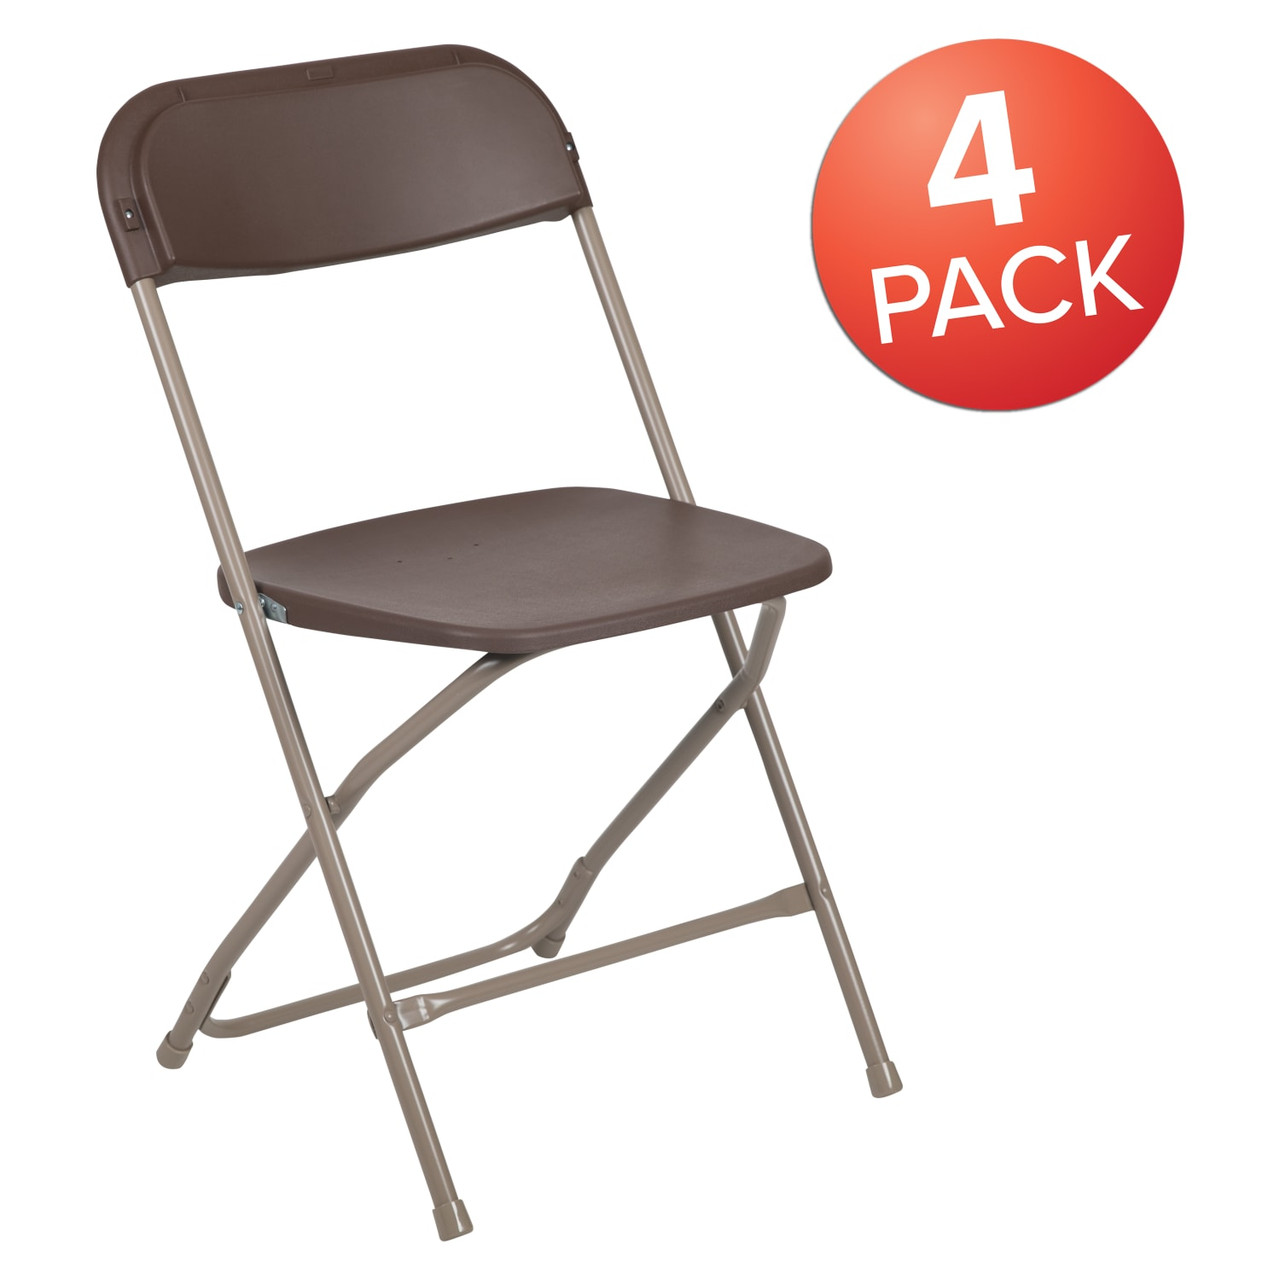 Hercules Series Plastic Folding Chair - Brown - 4 Pack Comfortable Event Chair-Lightweight Folding Chair